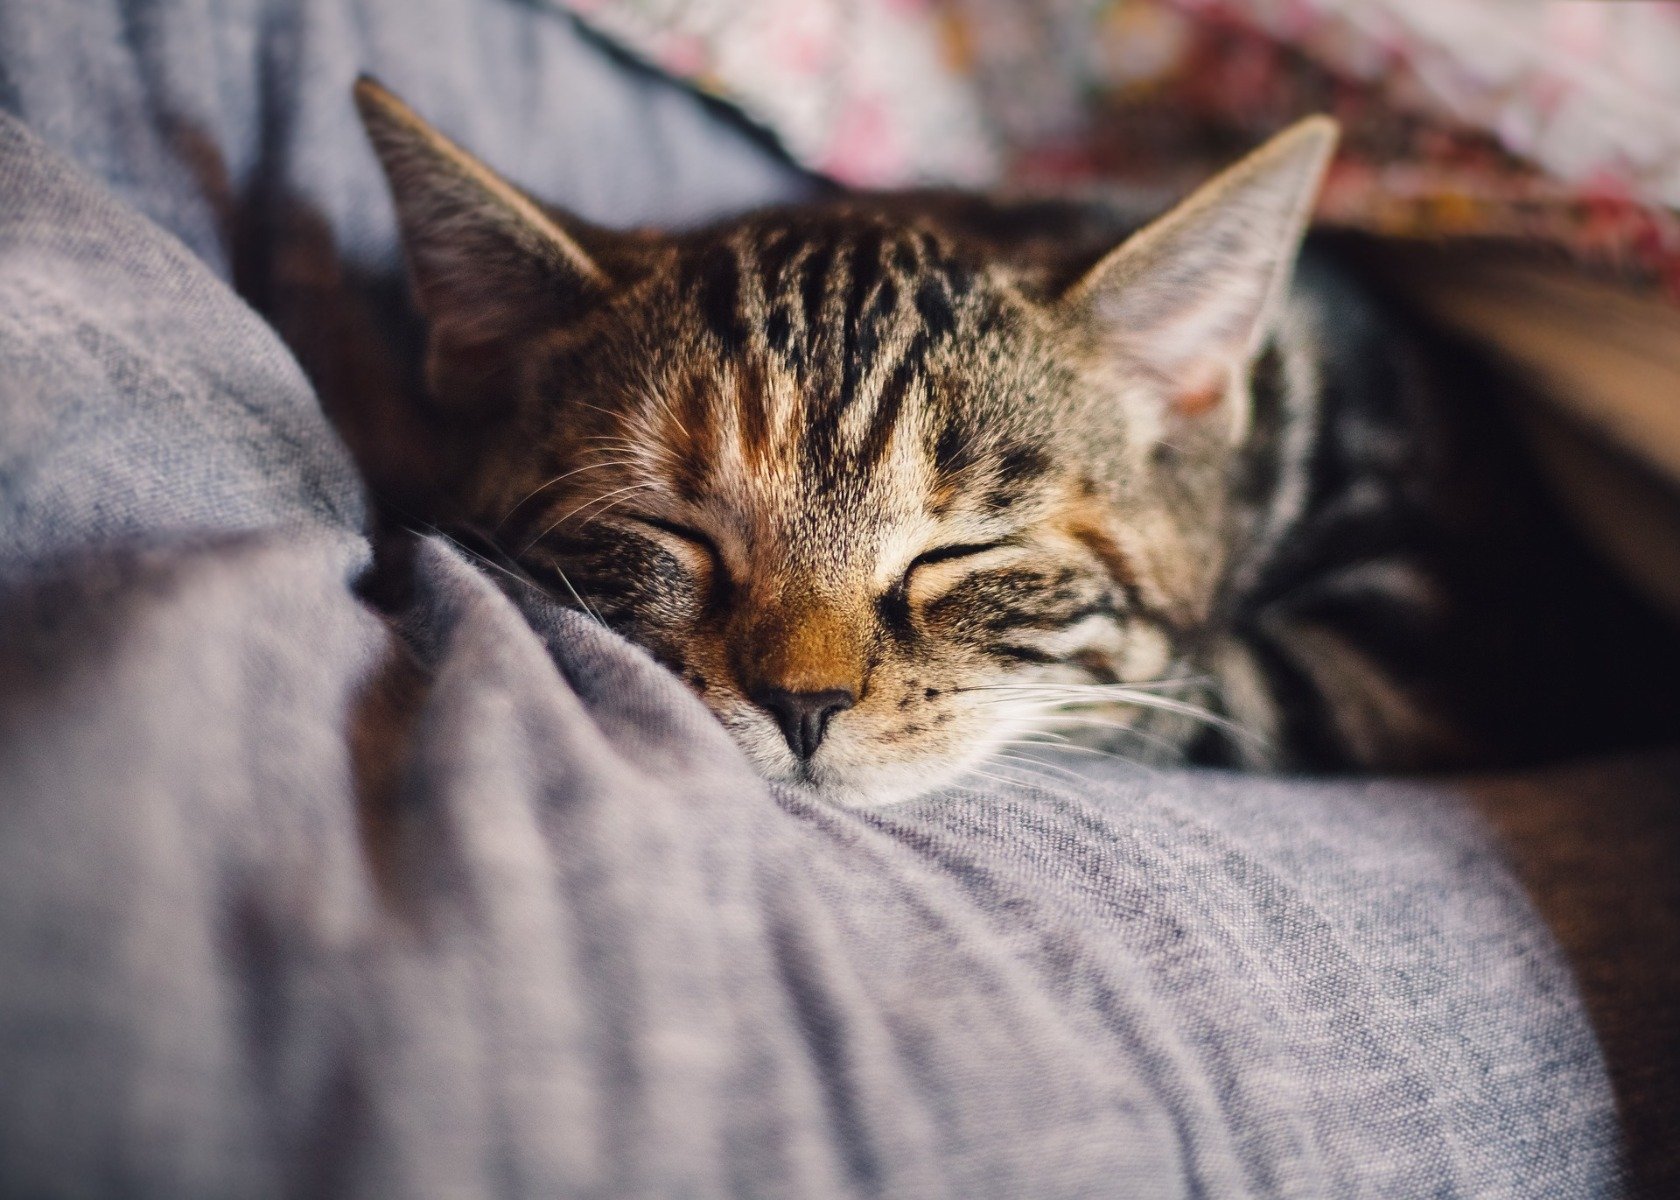 Junge graugetigerte Katze mit geschlossenen Augen liegt in einem menschlichen Arm – wirkt müde oder krank